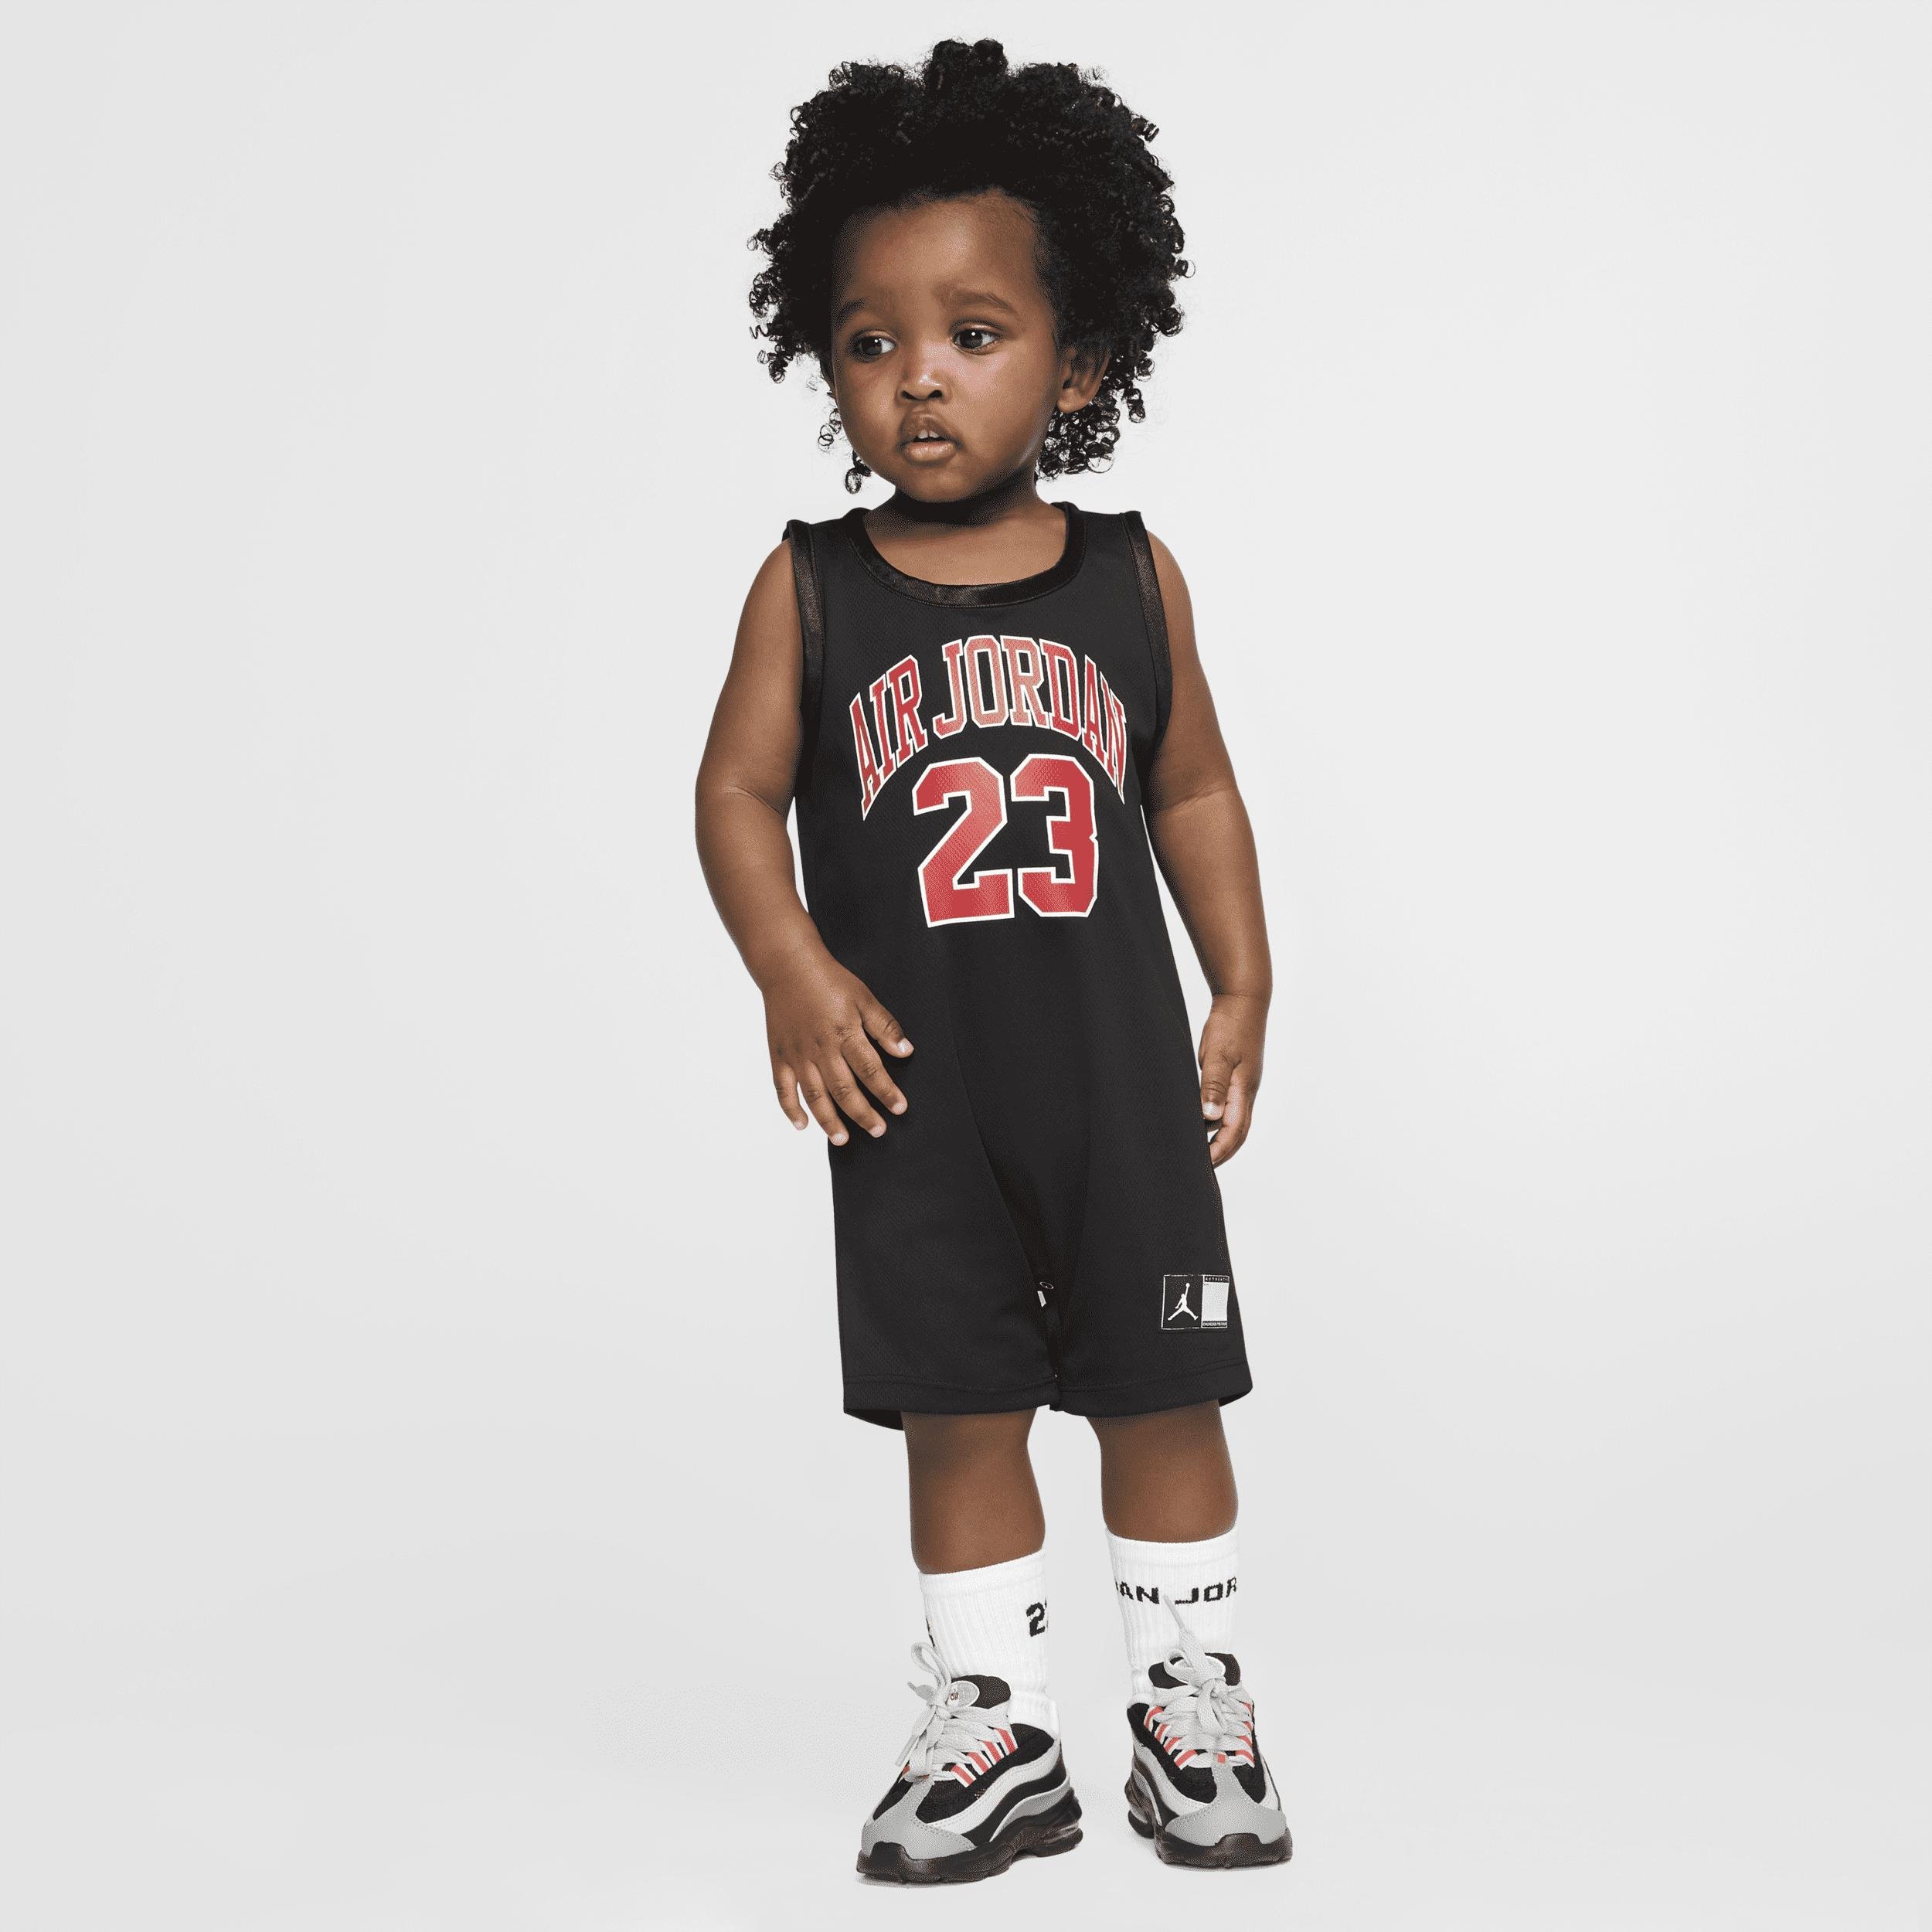 Jordan Baby (12-24M) Jersey Romper by JORDAN